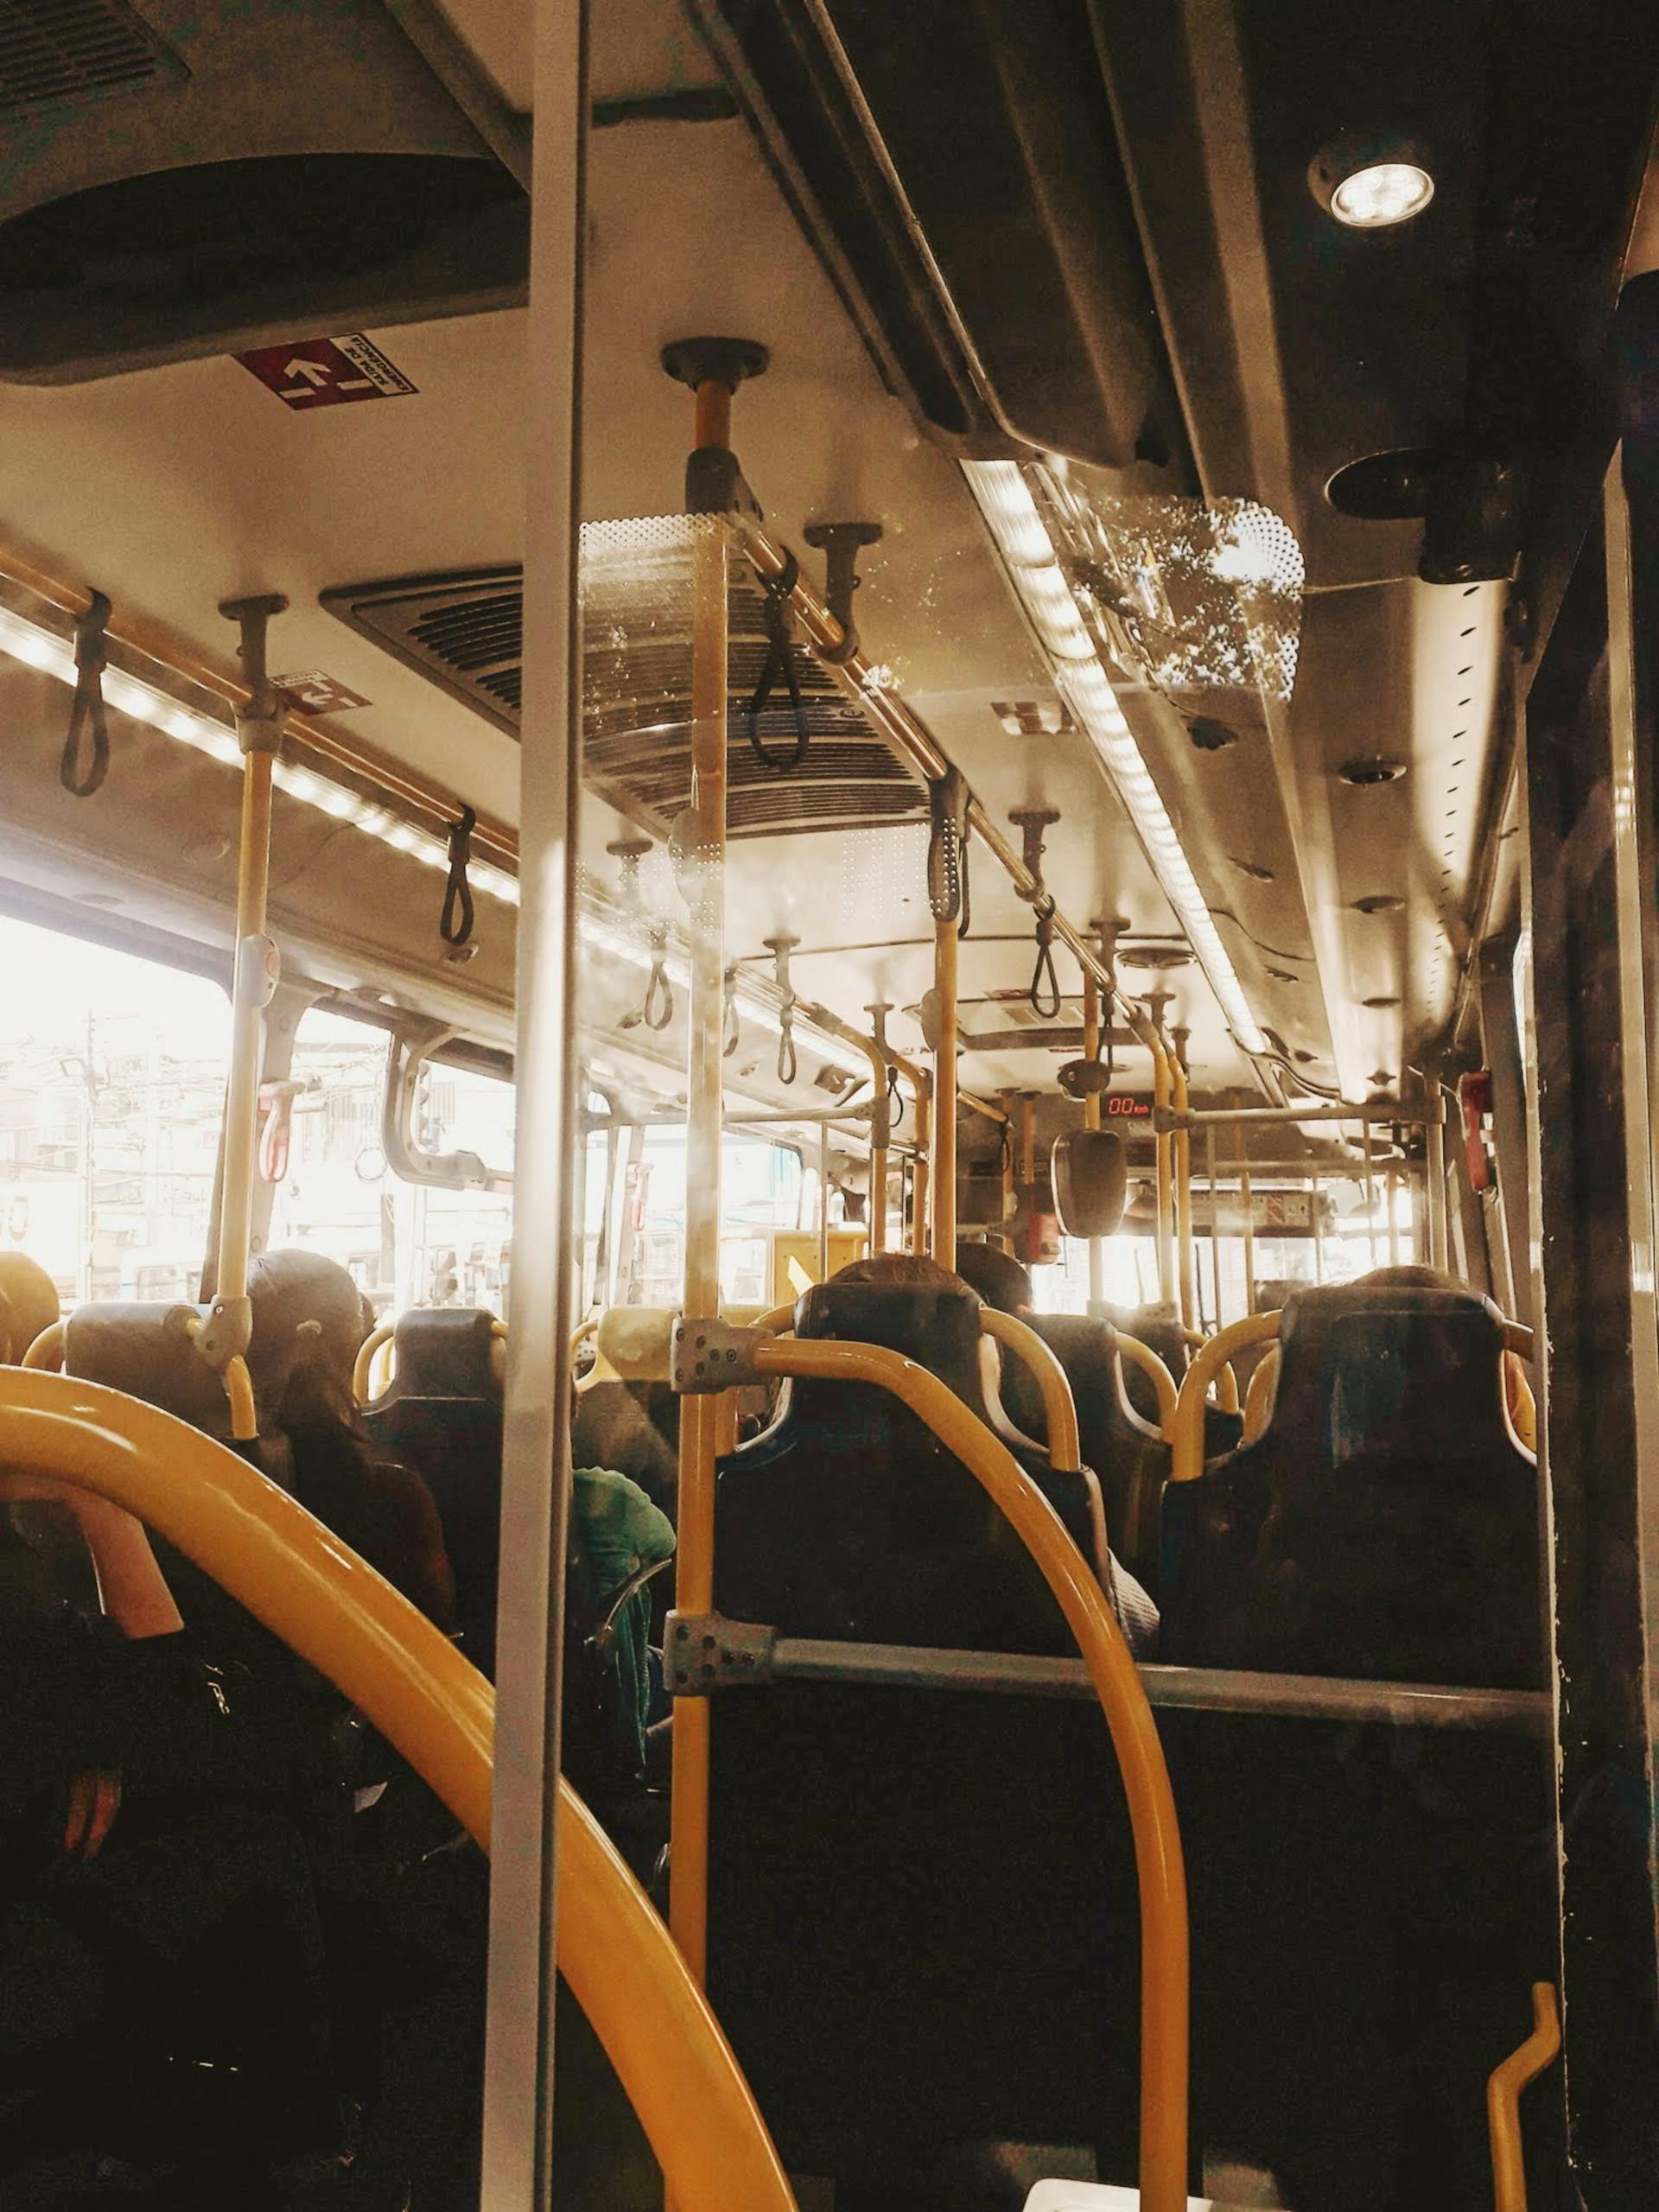 Menschen in einem Bus | Quelle: Pexels